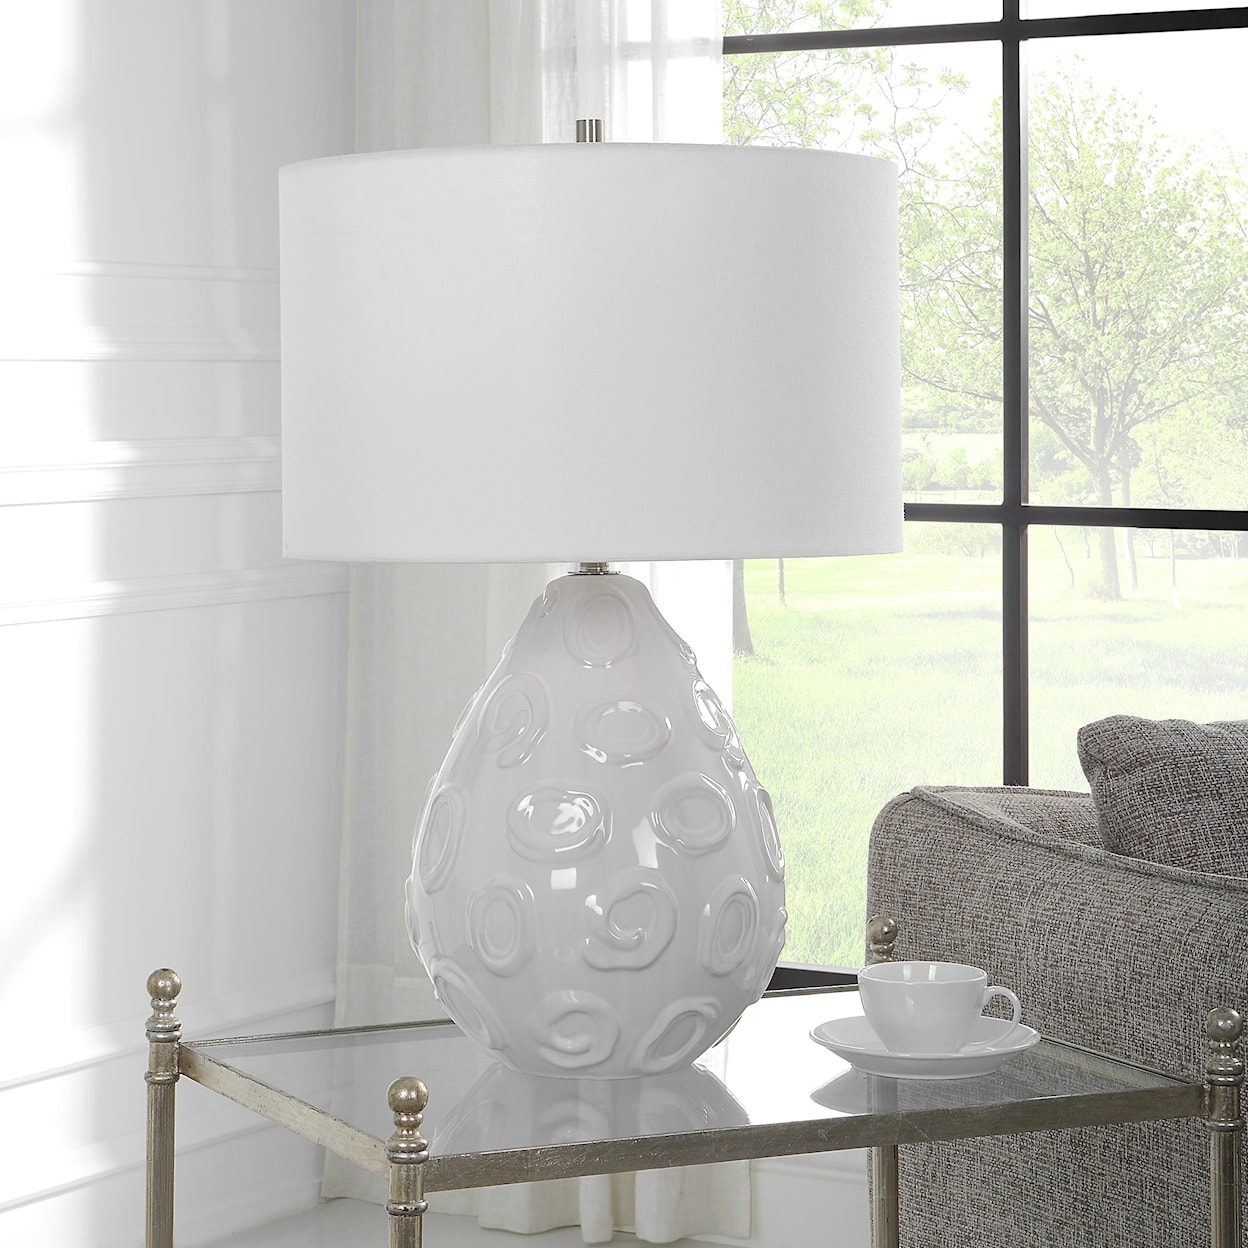 Uttermost Loop Loop White Glaze Table Lamp